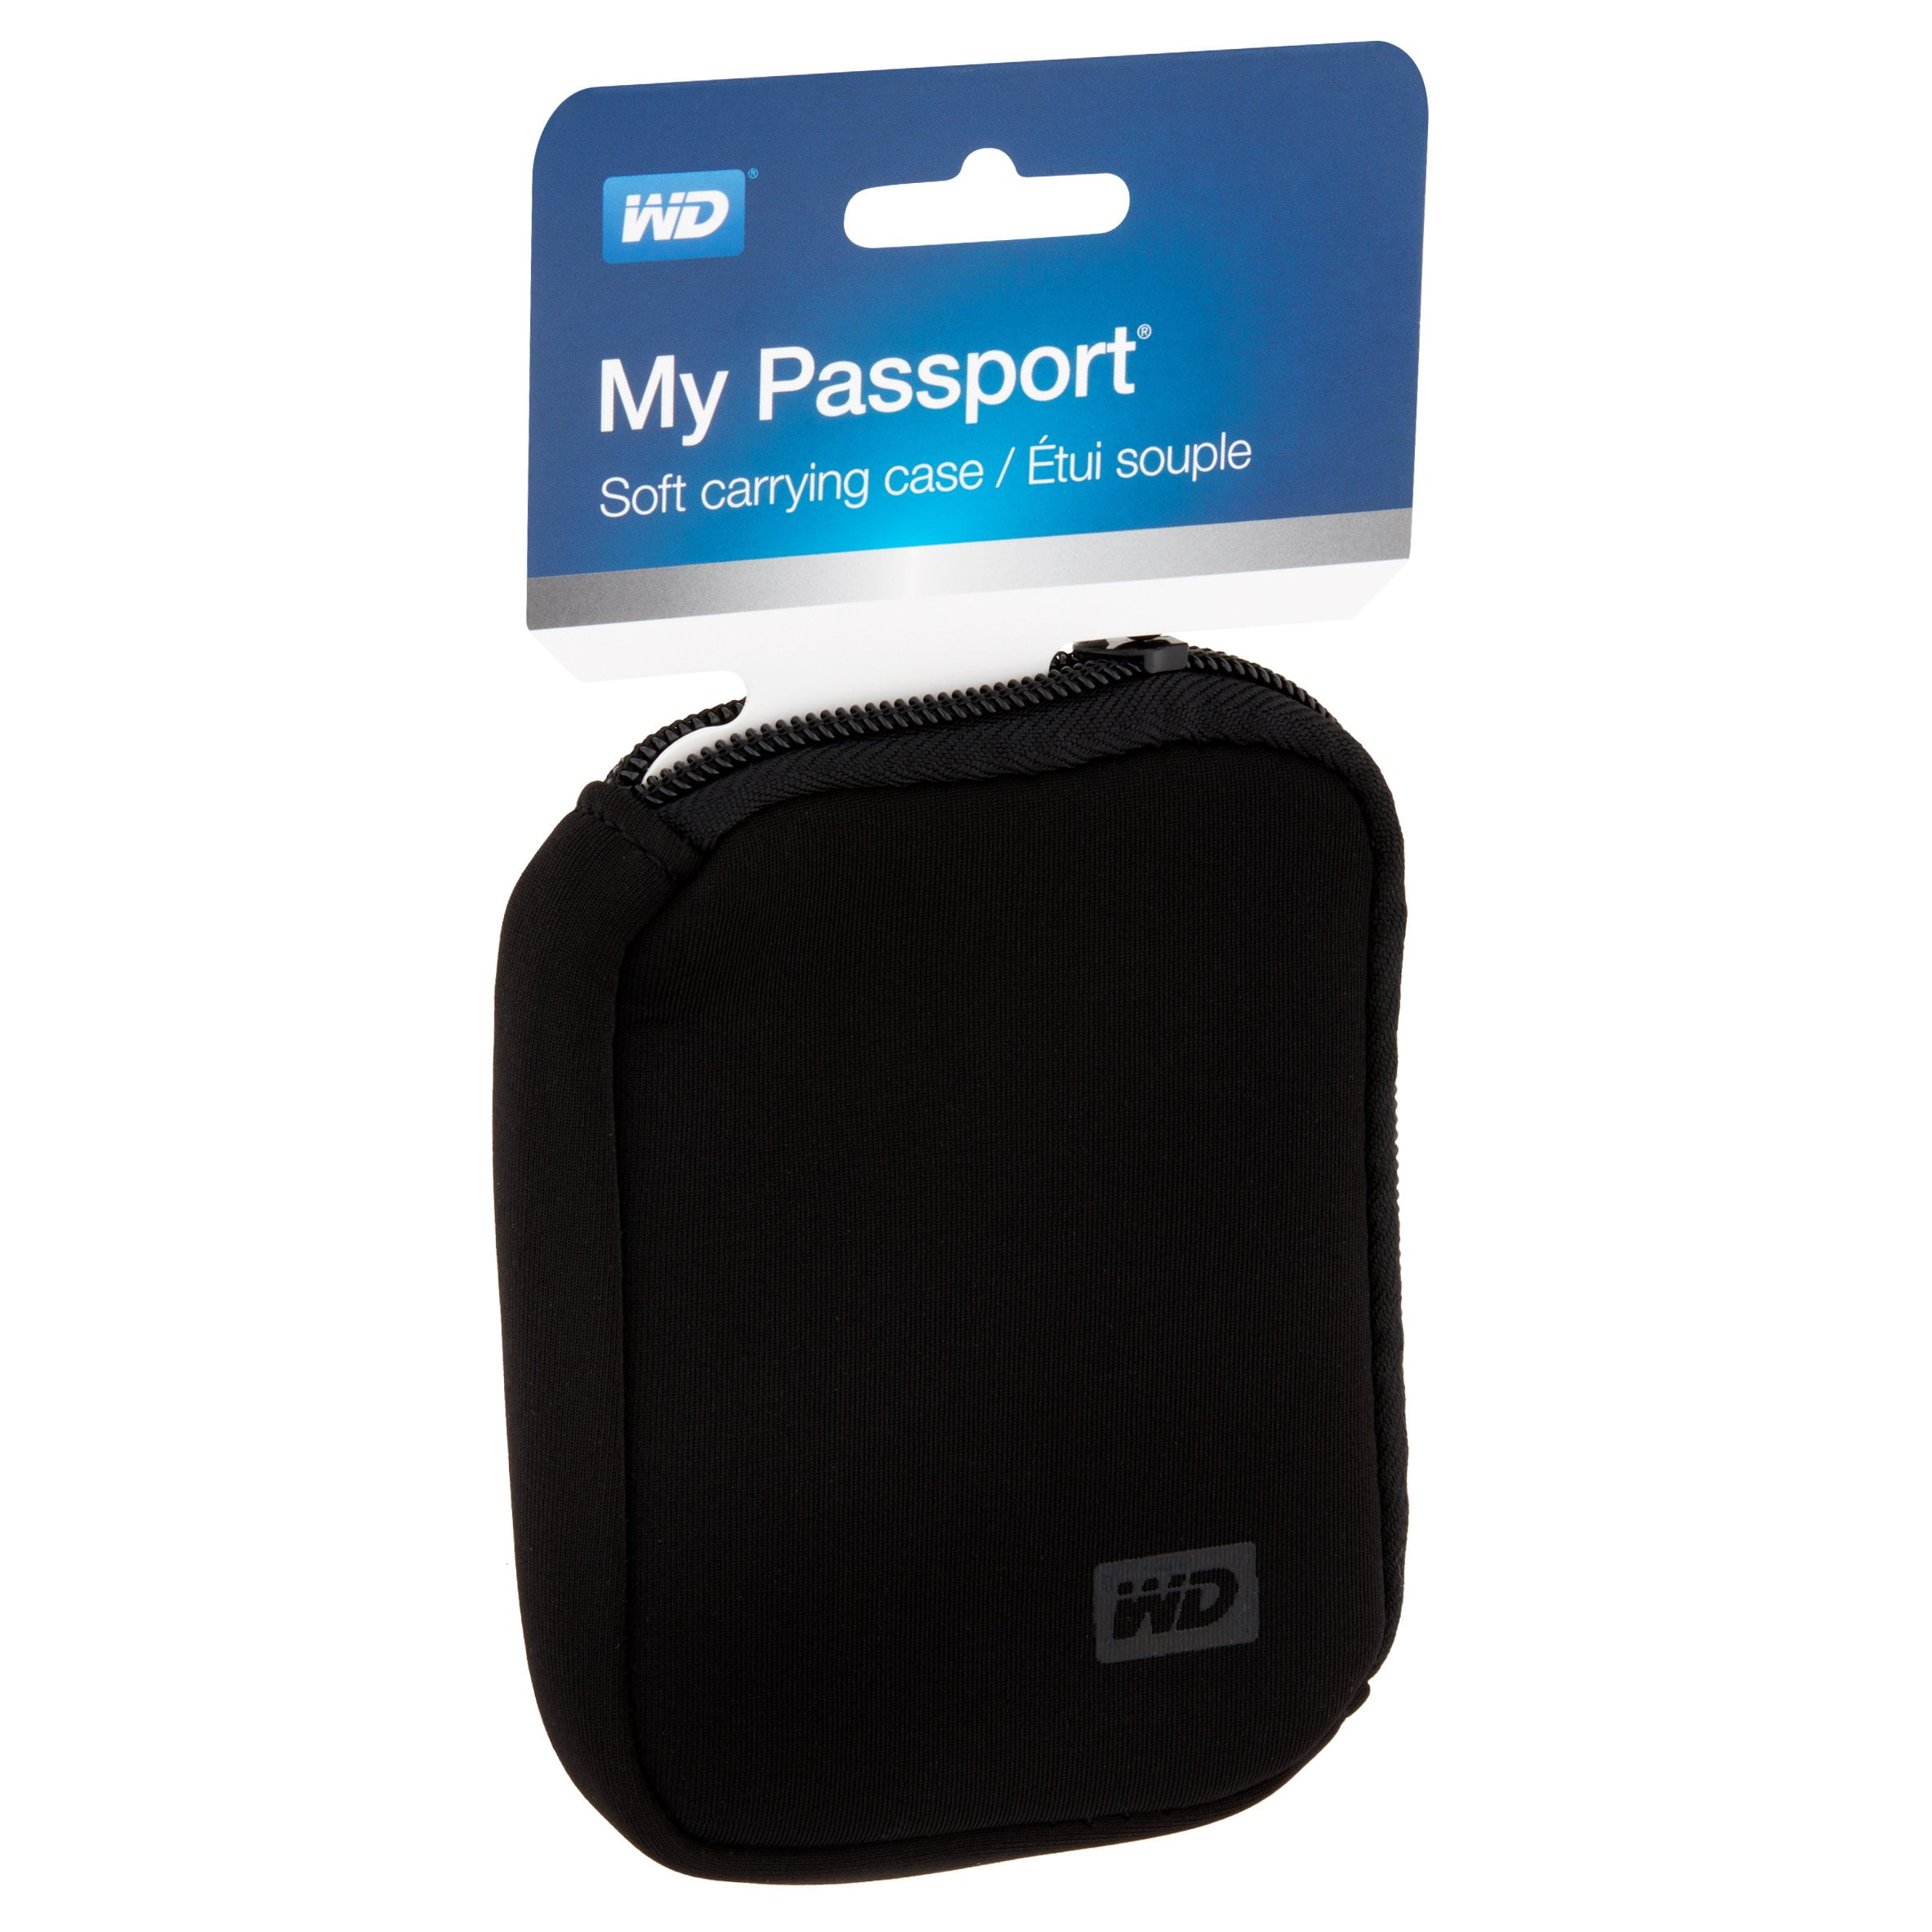 WD My Passport External Hard Drive Soft Carrying Case - Walmart.com